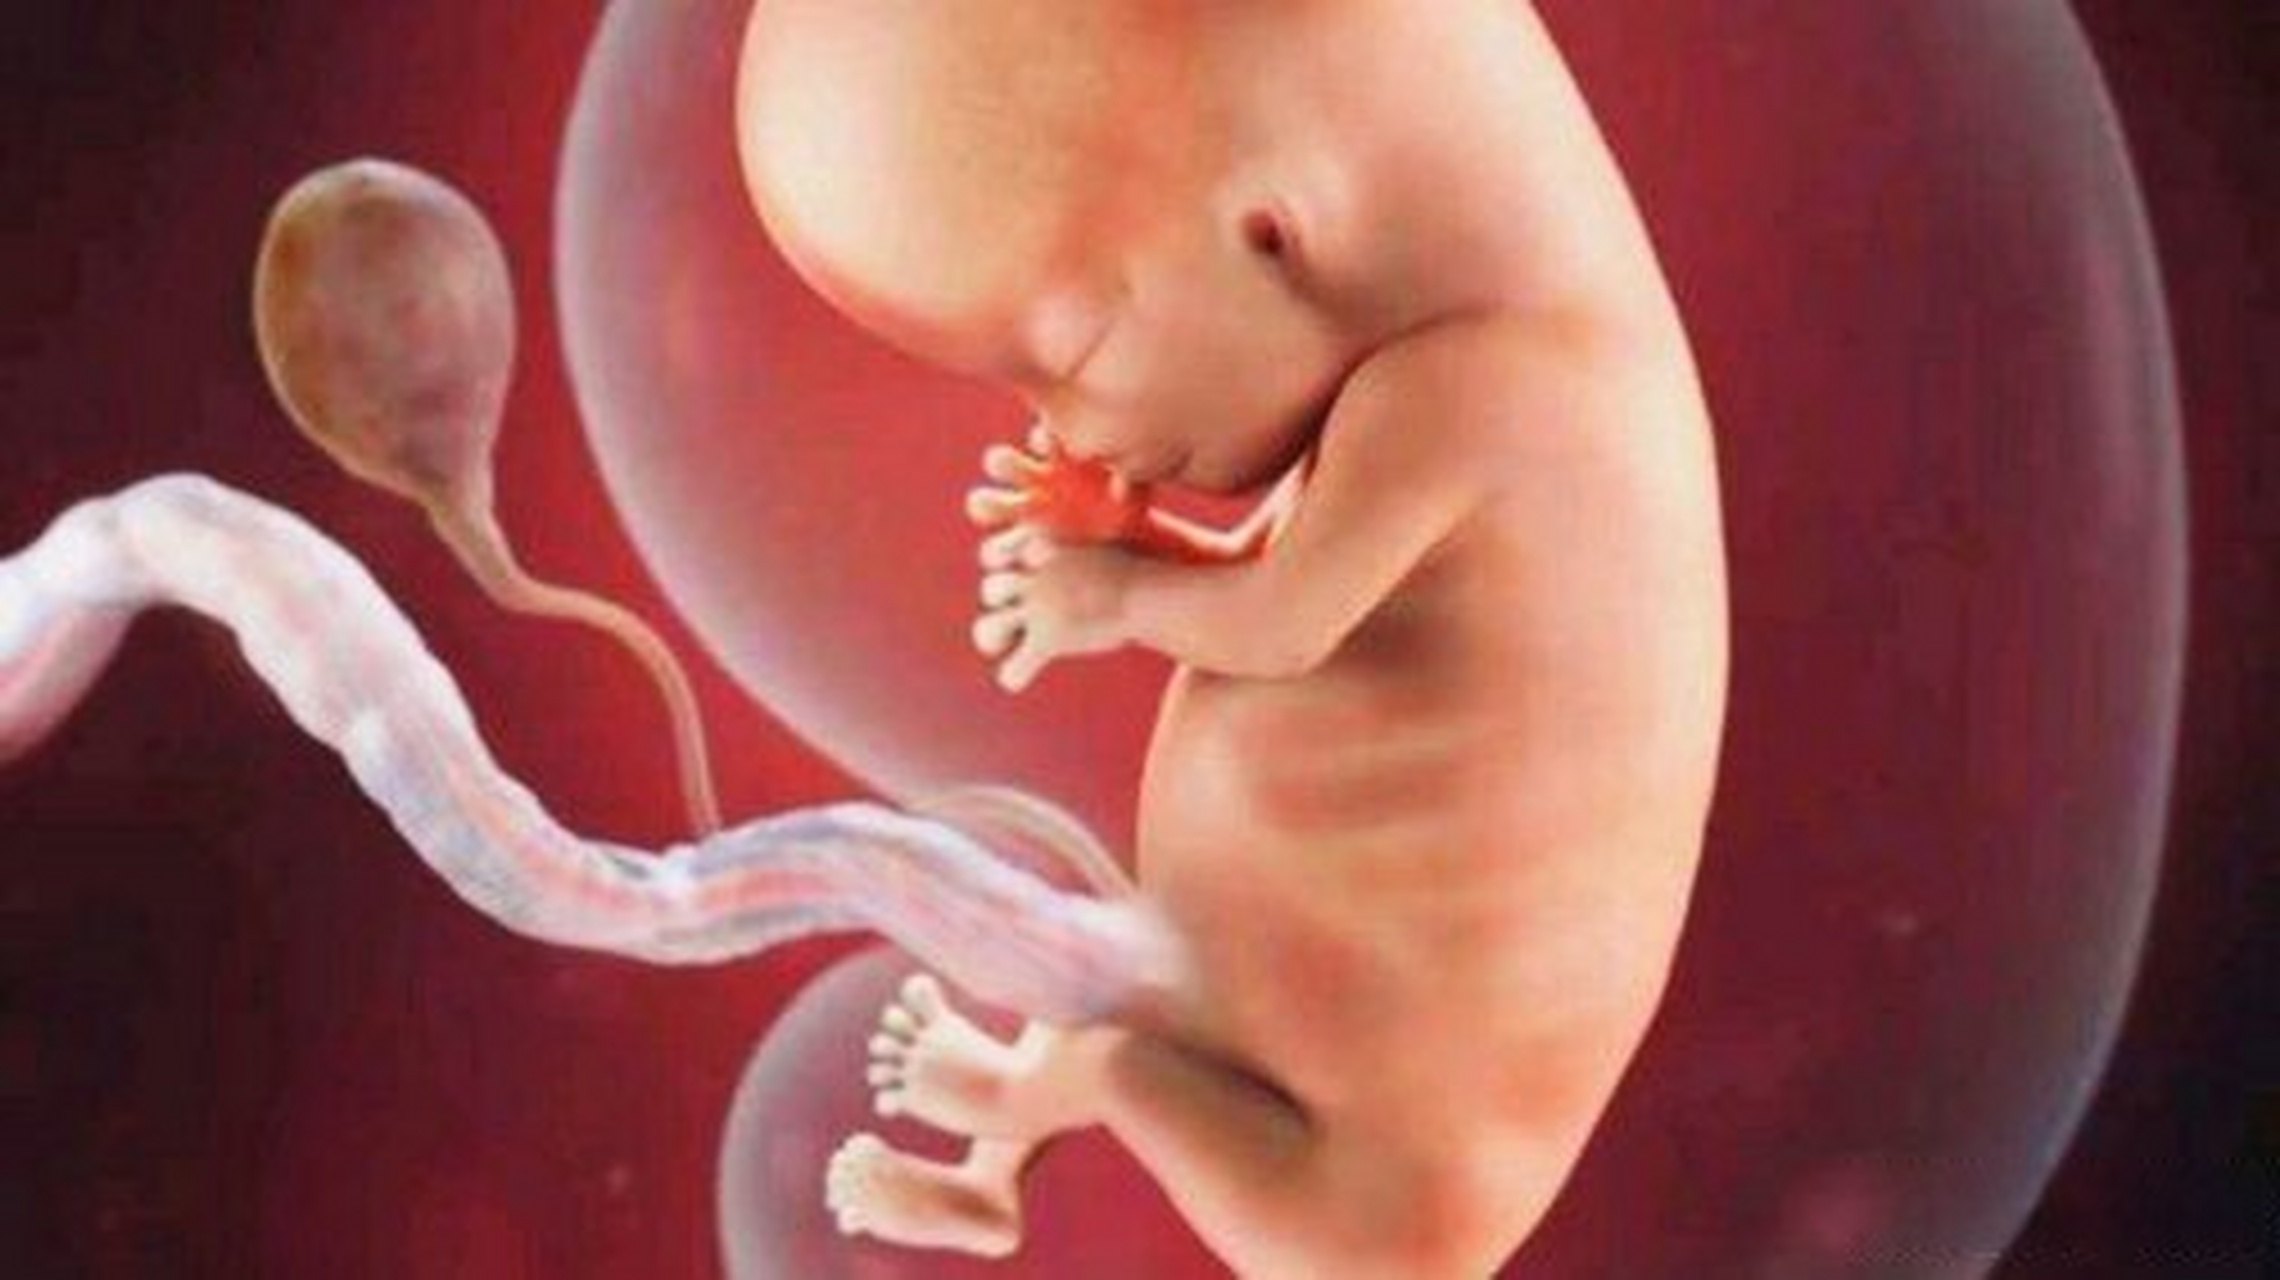 5个半月胎儿图片